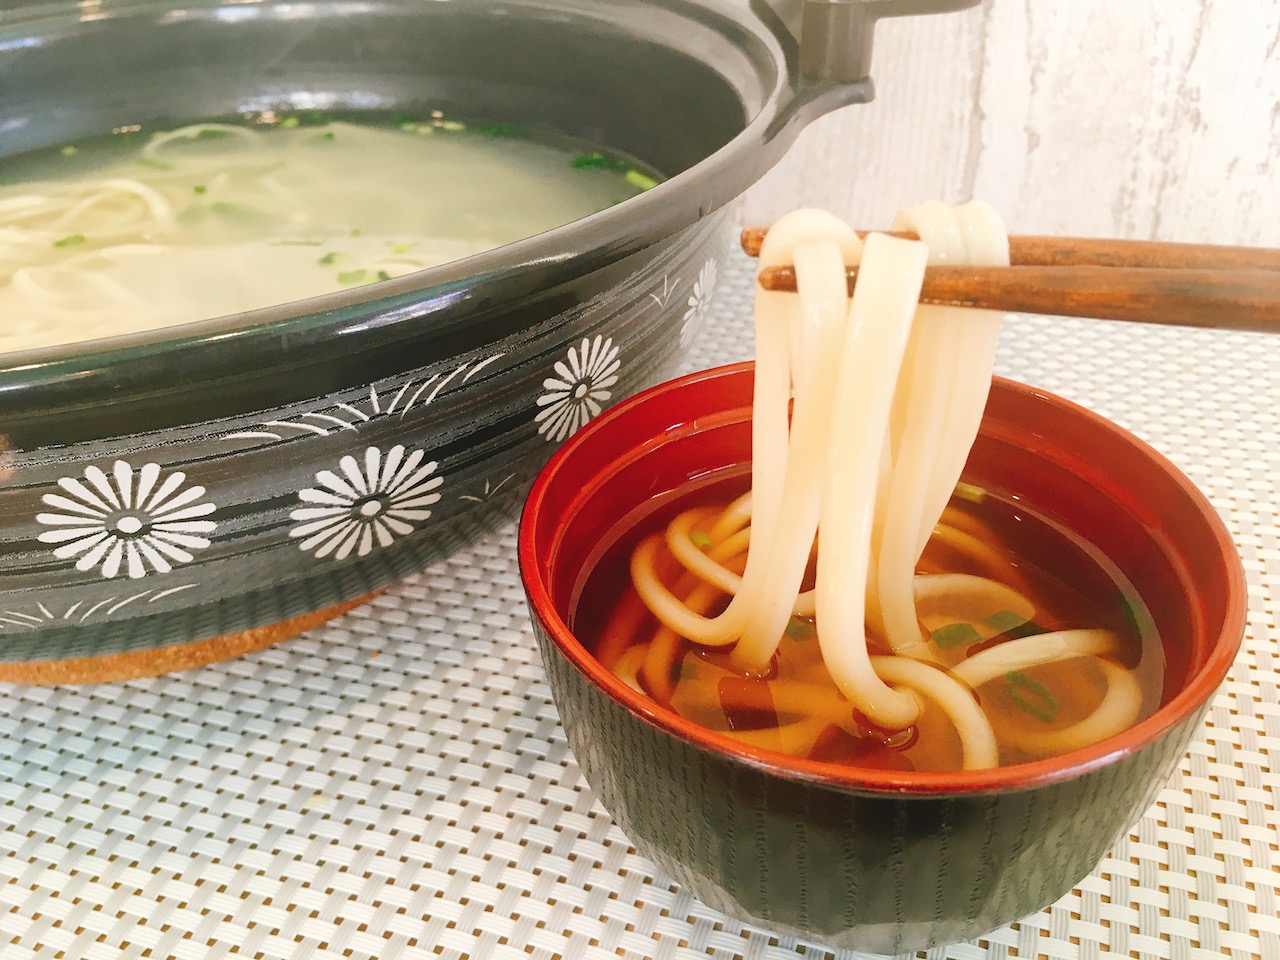 【実食レポ】寒い季節はうどんで温活!! 茹で汁まで美味しい「手延べ生姜うどん」をお取り寄せ!! #Makuake